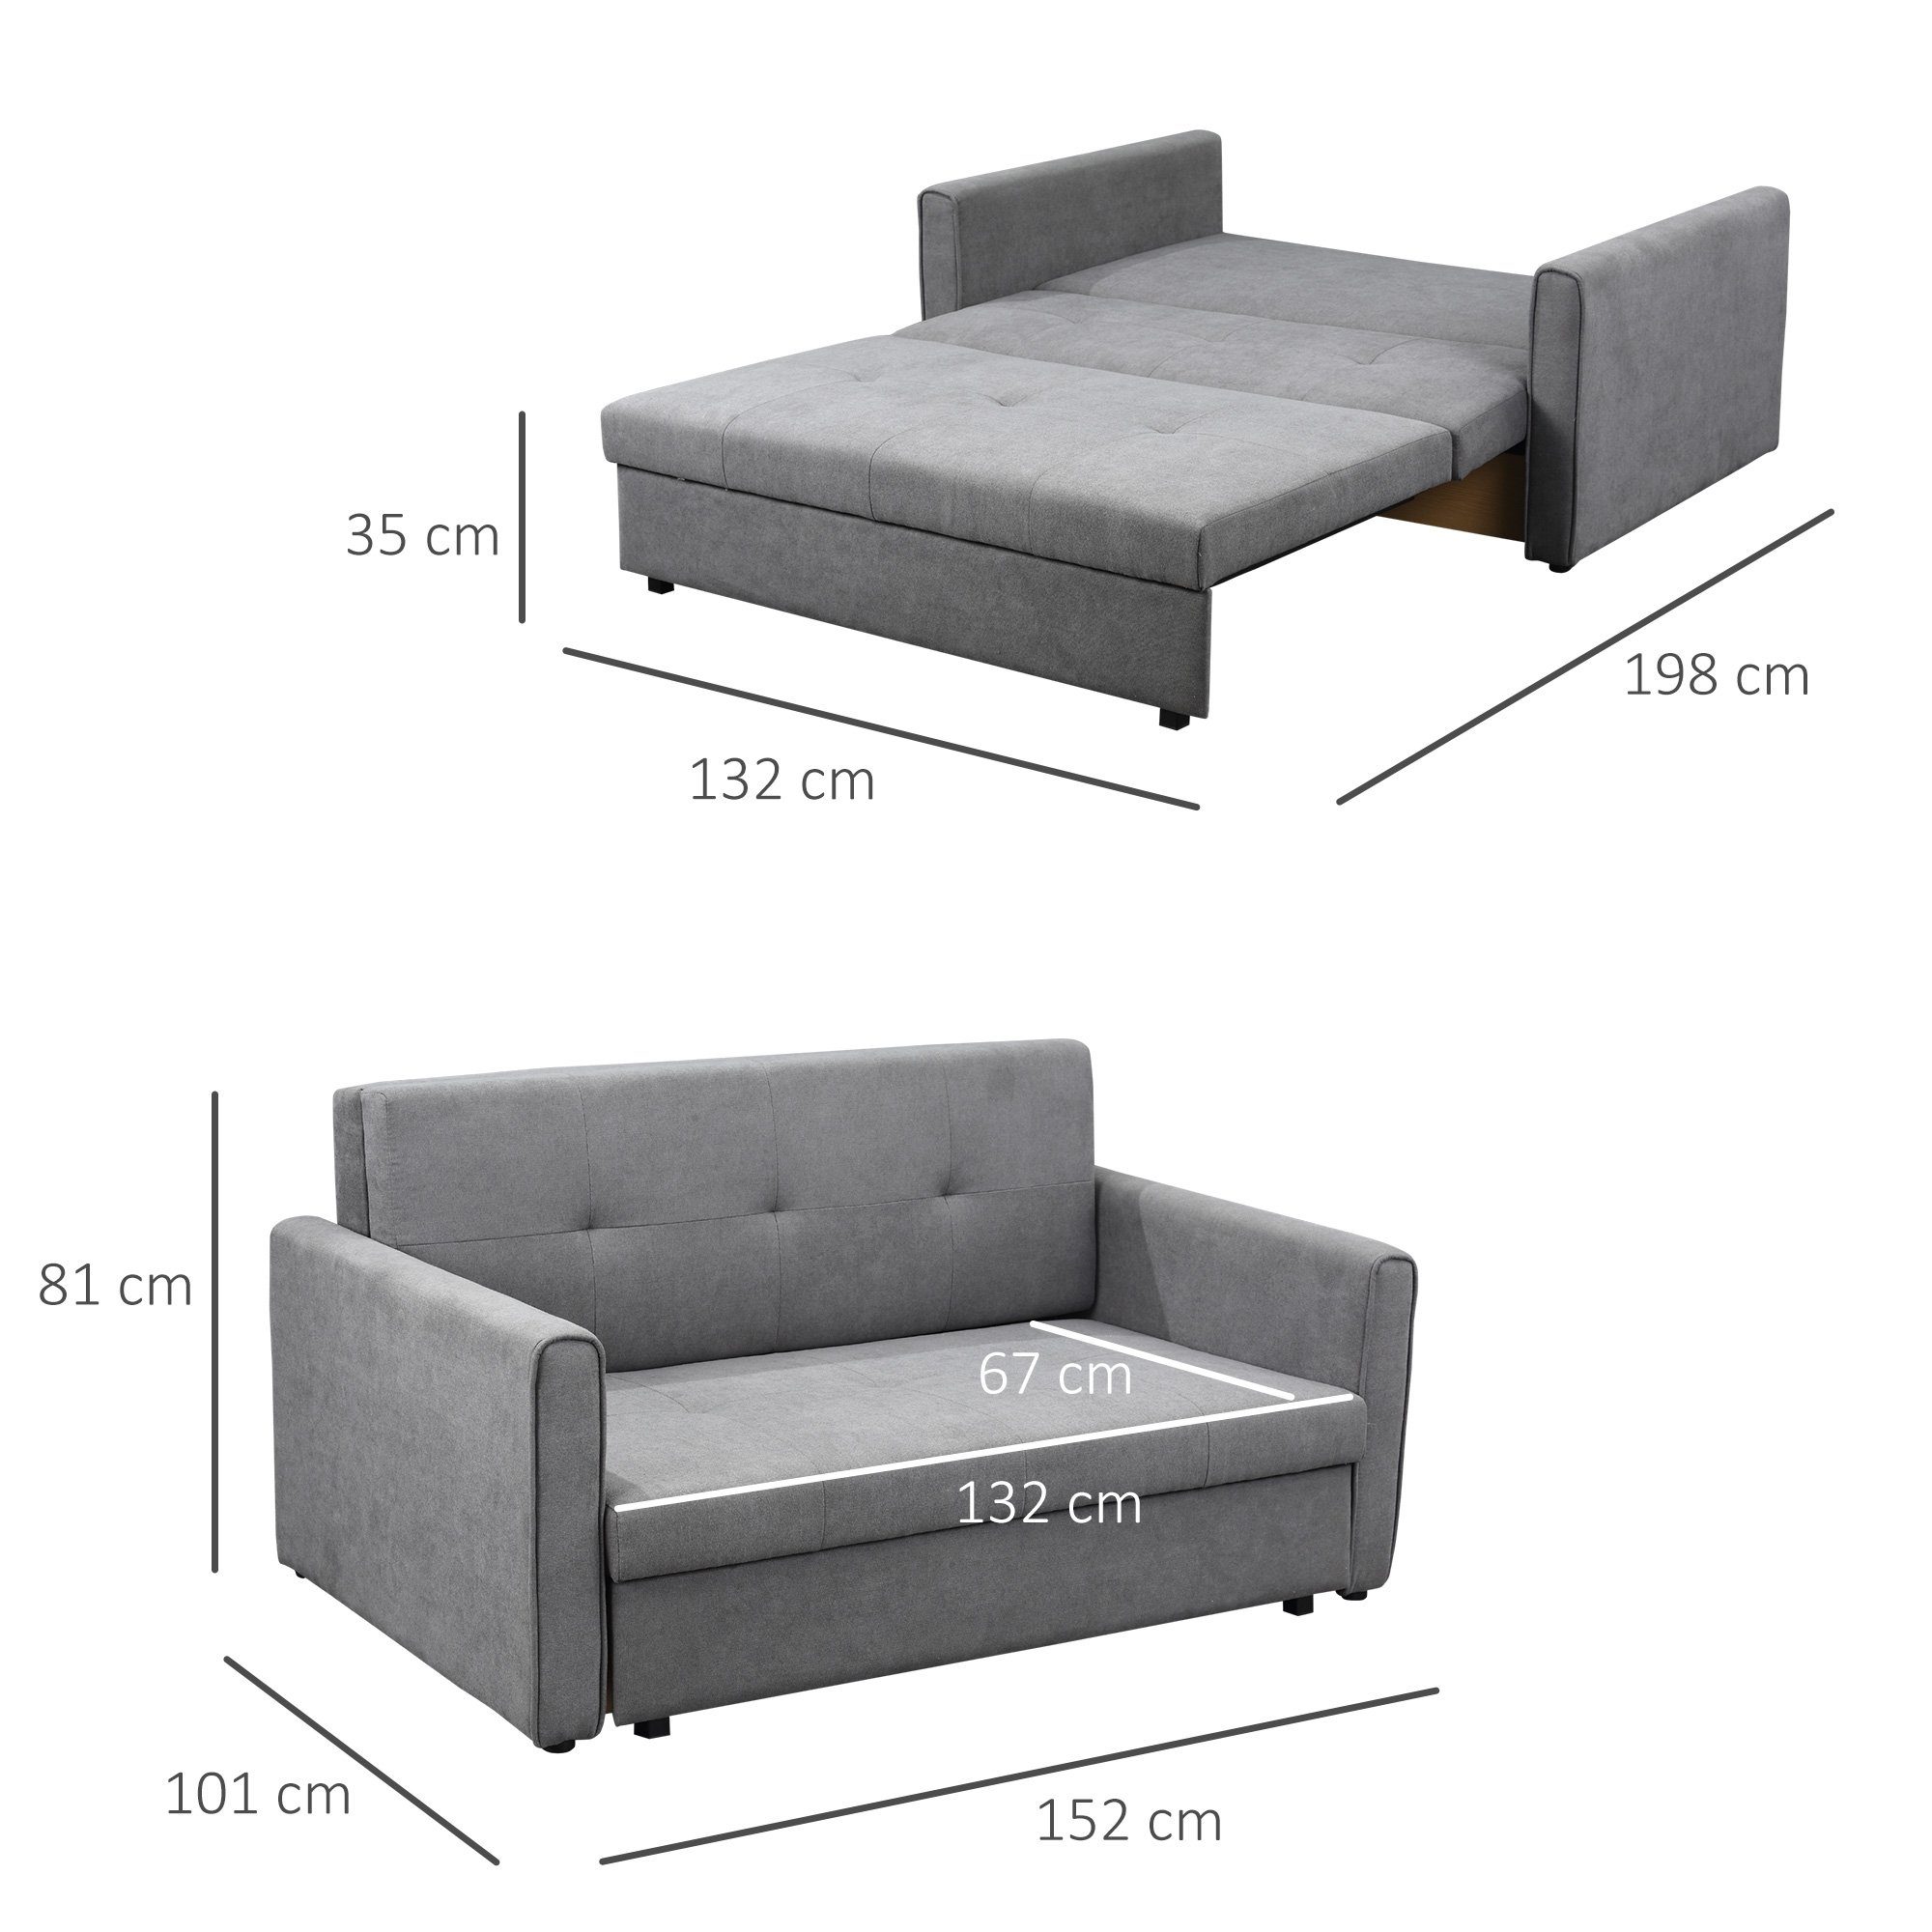 Sofa HOMCOM Bettfunktion, mit Schlafsofa 1 Stauraum, mit Polycotton, Polstersofa Holz Sofa Wohnzimmer, Schlafcouch, für Teile, 2-Sitzer